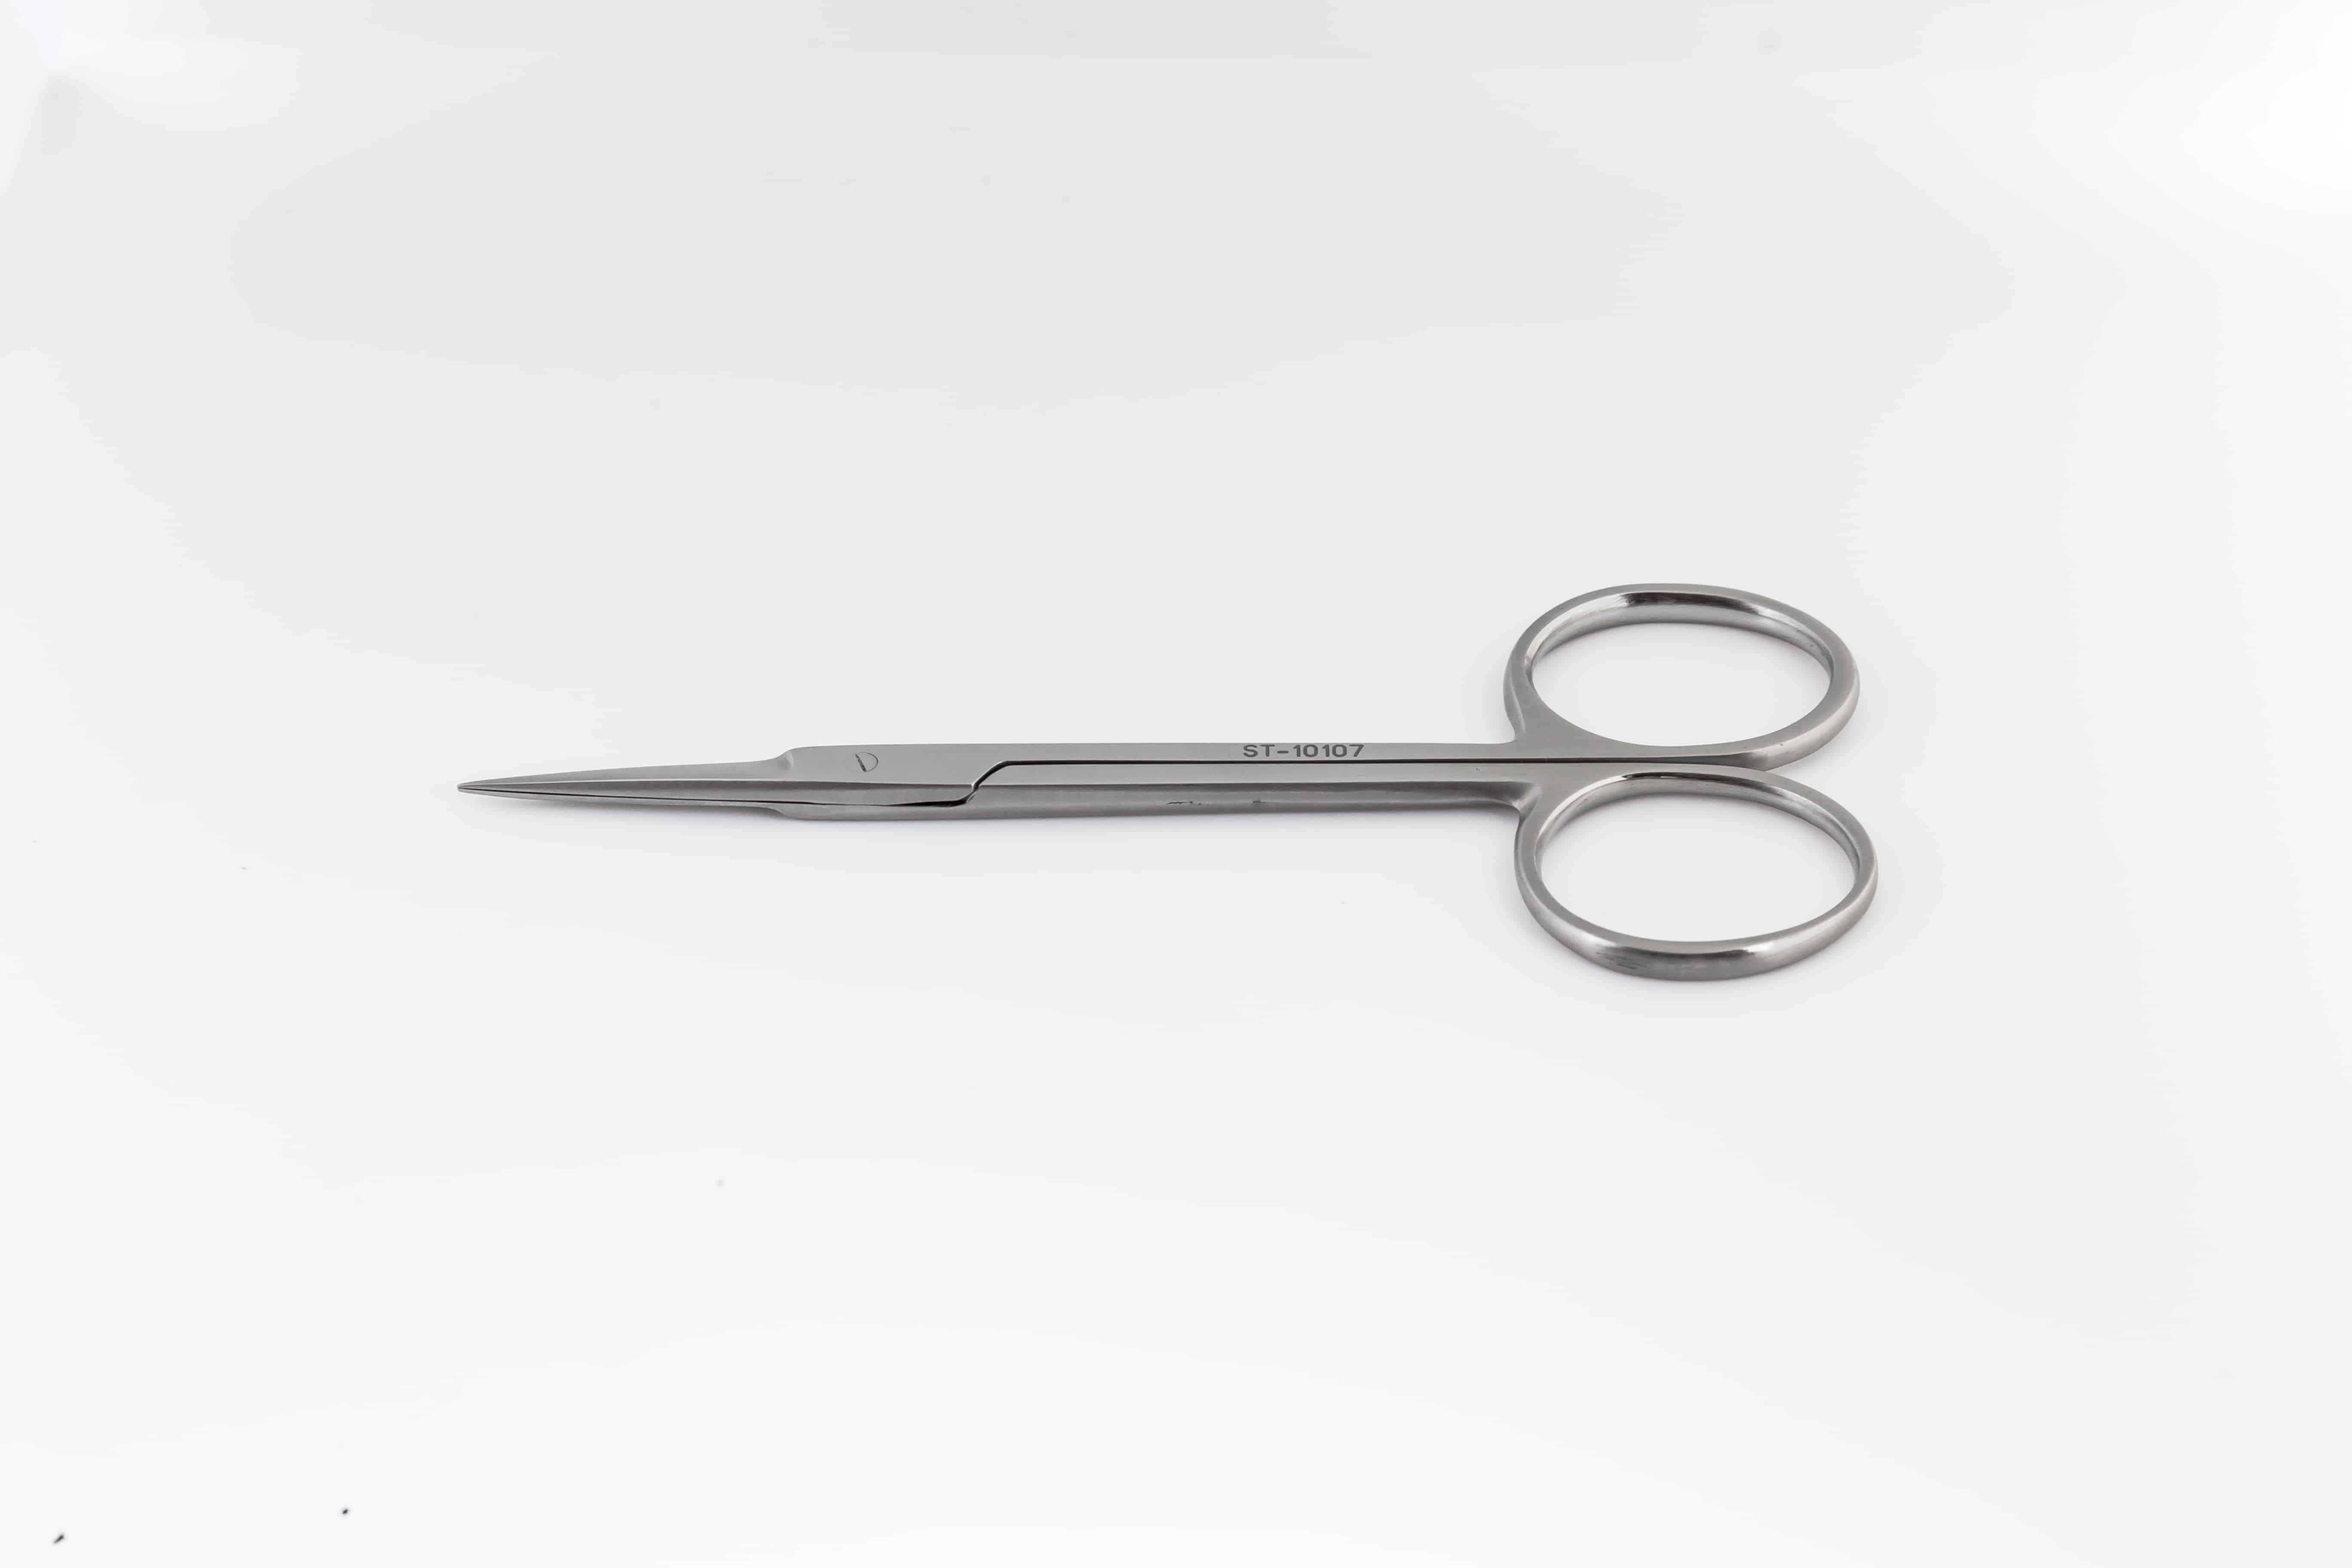 Iris Operating Straight Sharp/Sharp Scissors 10.5 Cm Stainless Steel